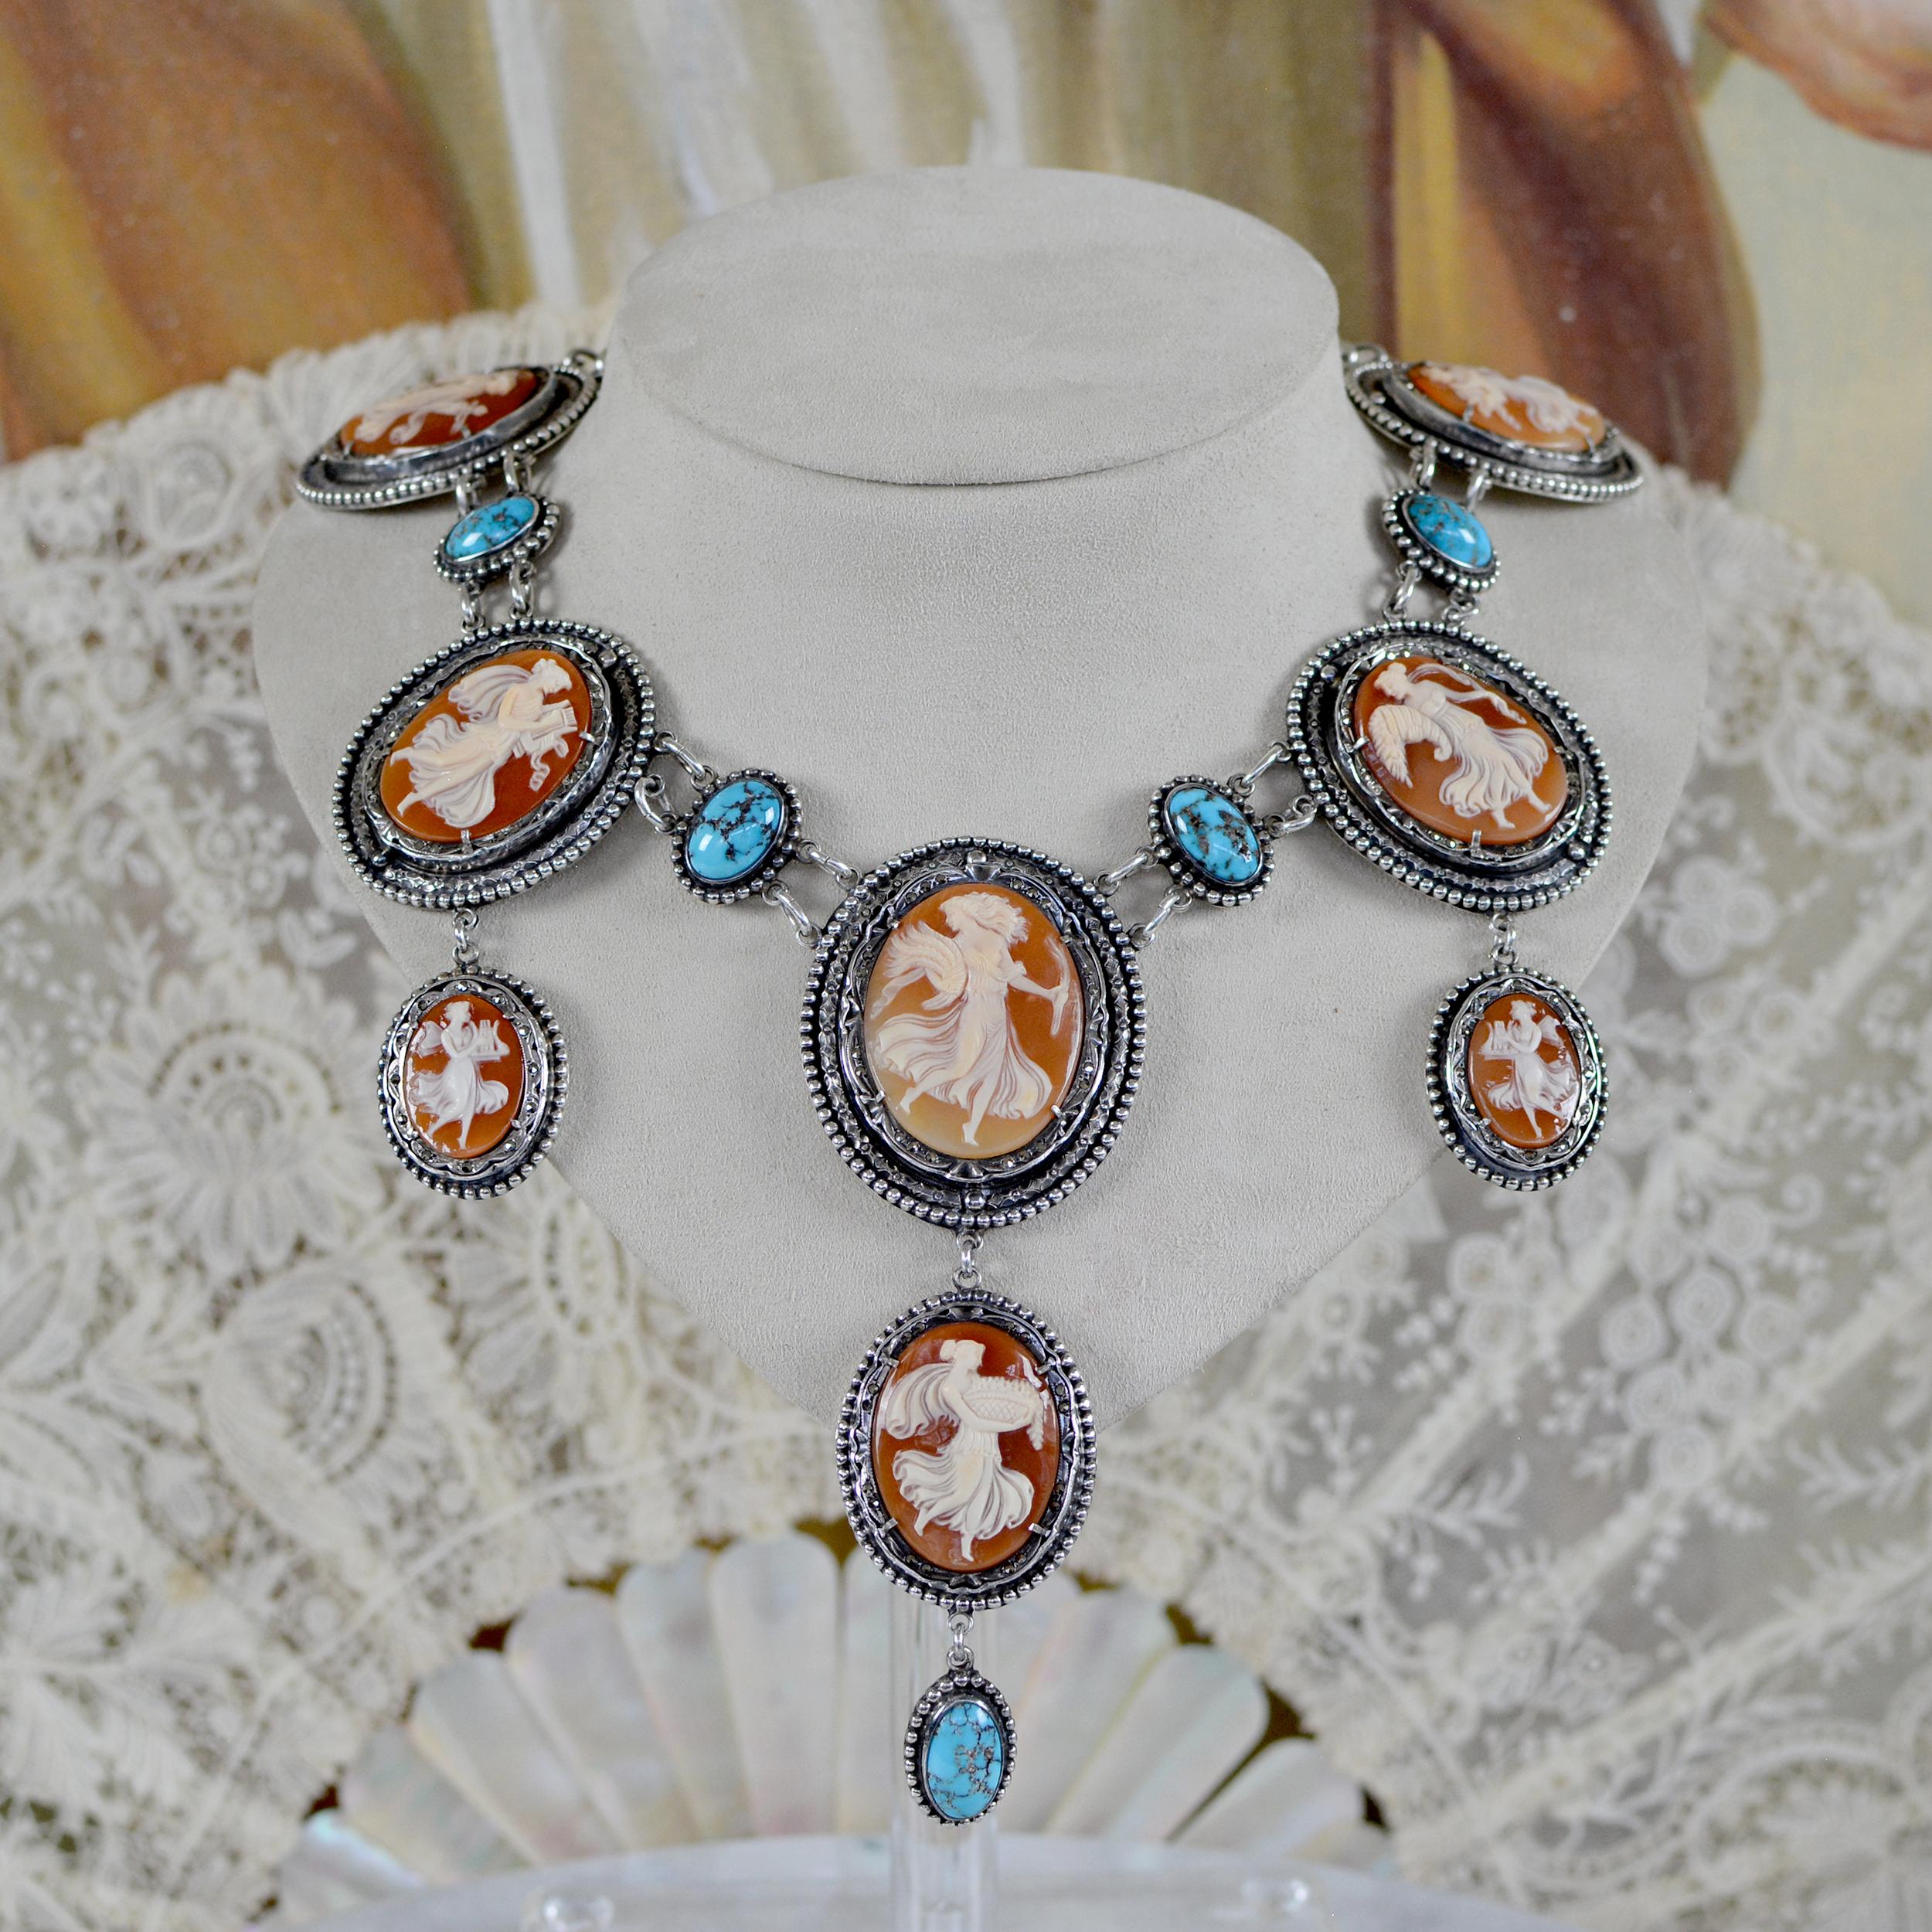 Diese exquisite handgefertigte, einzigartige Halskette im Barockstil der Designerin Jill Garber besteht aus acht (8) fein geschnitzten, natürlichen Muschelkameen aus dem späten neunzehnten Jahrhundert, die Terpsichore, eine der neun Musen der